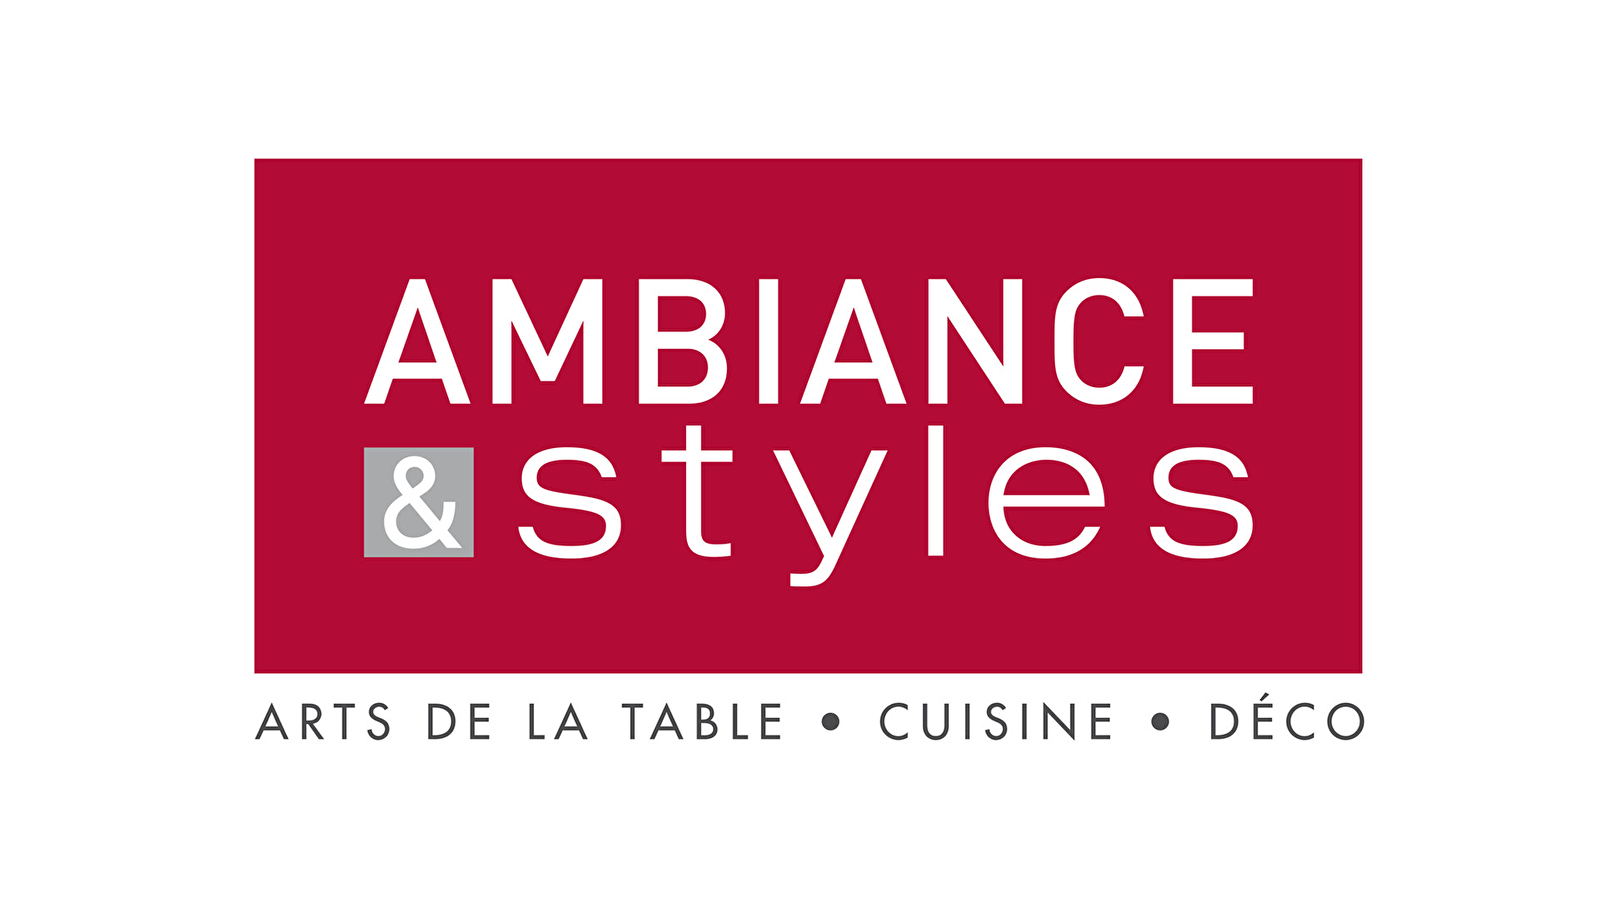 Art de la table / Cuisine / Déco - Ambiance et Styles